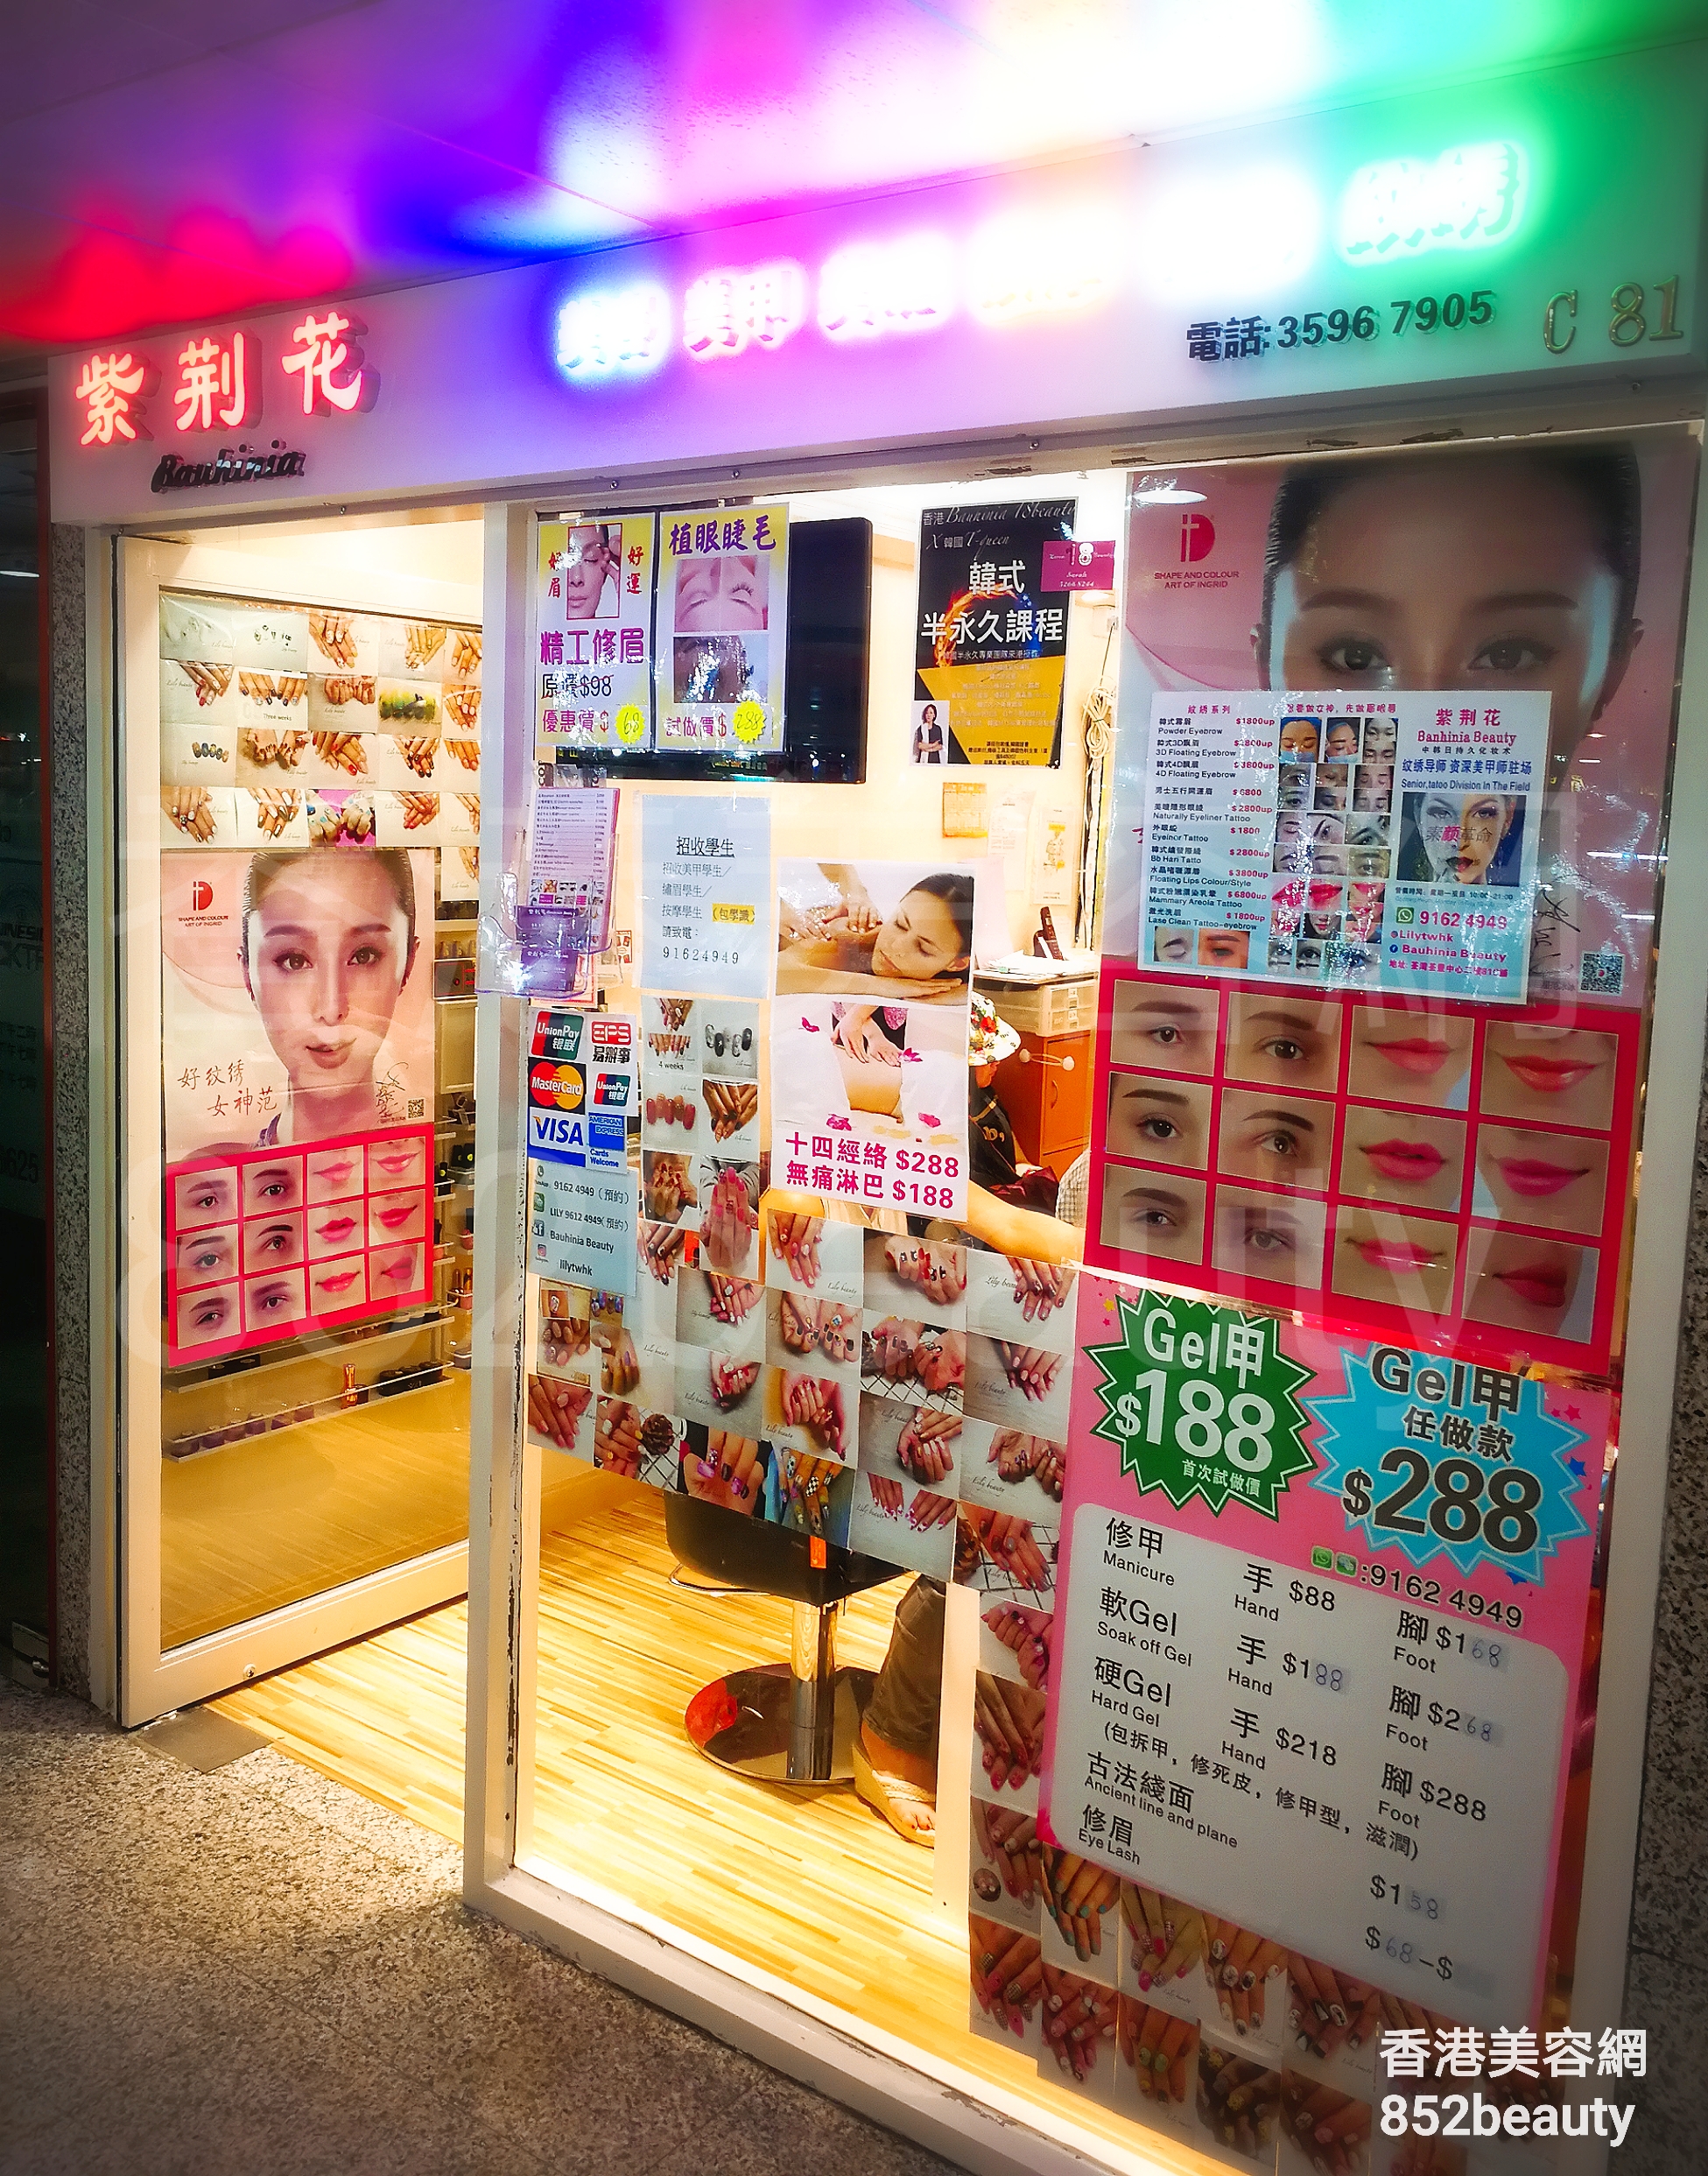 香港美容網 Hong Kong Beauty Salon 美容院 / 美容師: 紫荊花美容 Bauhinia Beauty (美甲專門店)